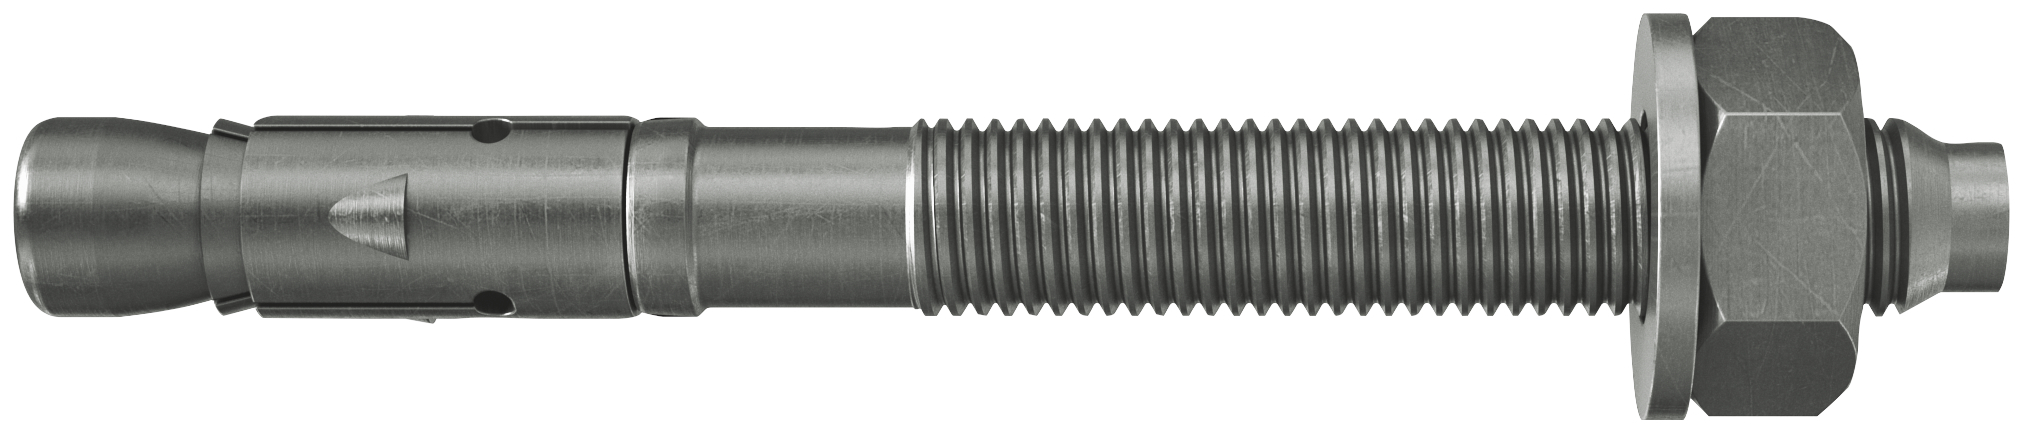 fischer Tassello acciaio FAZ II 12/20 A4 (20 Pz.) L'ancorante ad espansione ad alte prestazioni per carichi statici su calcestruzzo fessurato e per applicazioni sismiche. Versione in acciaio inossidabile con classe di resistenza alla corrosione CRC III..